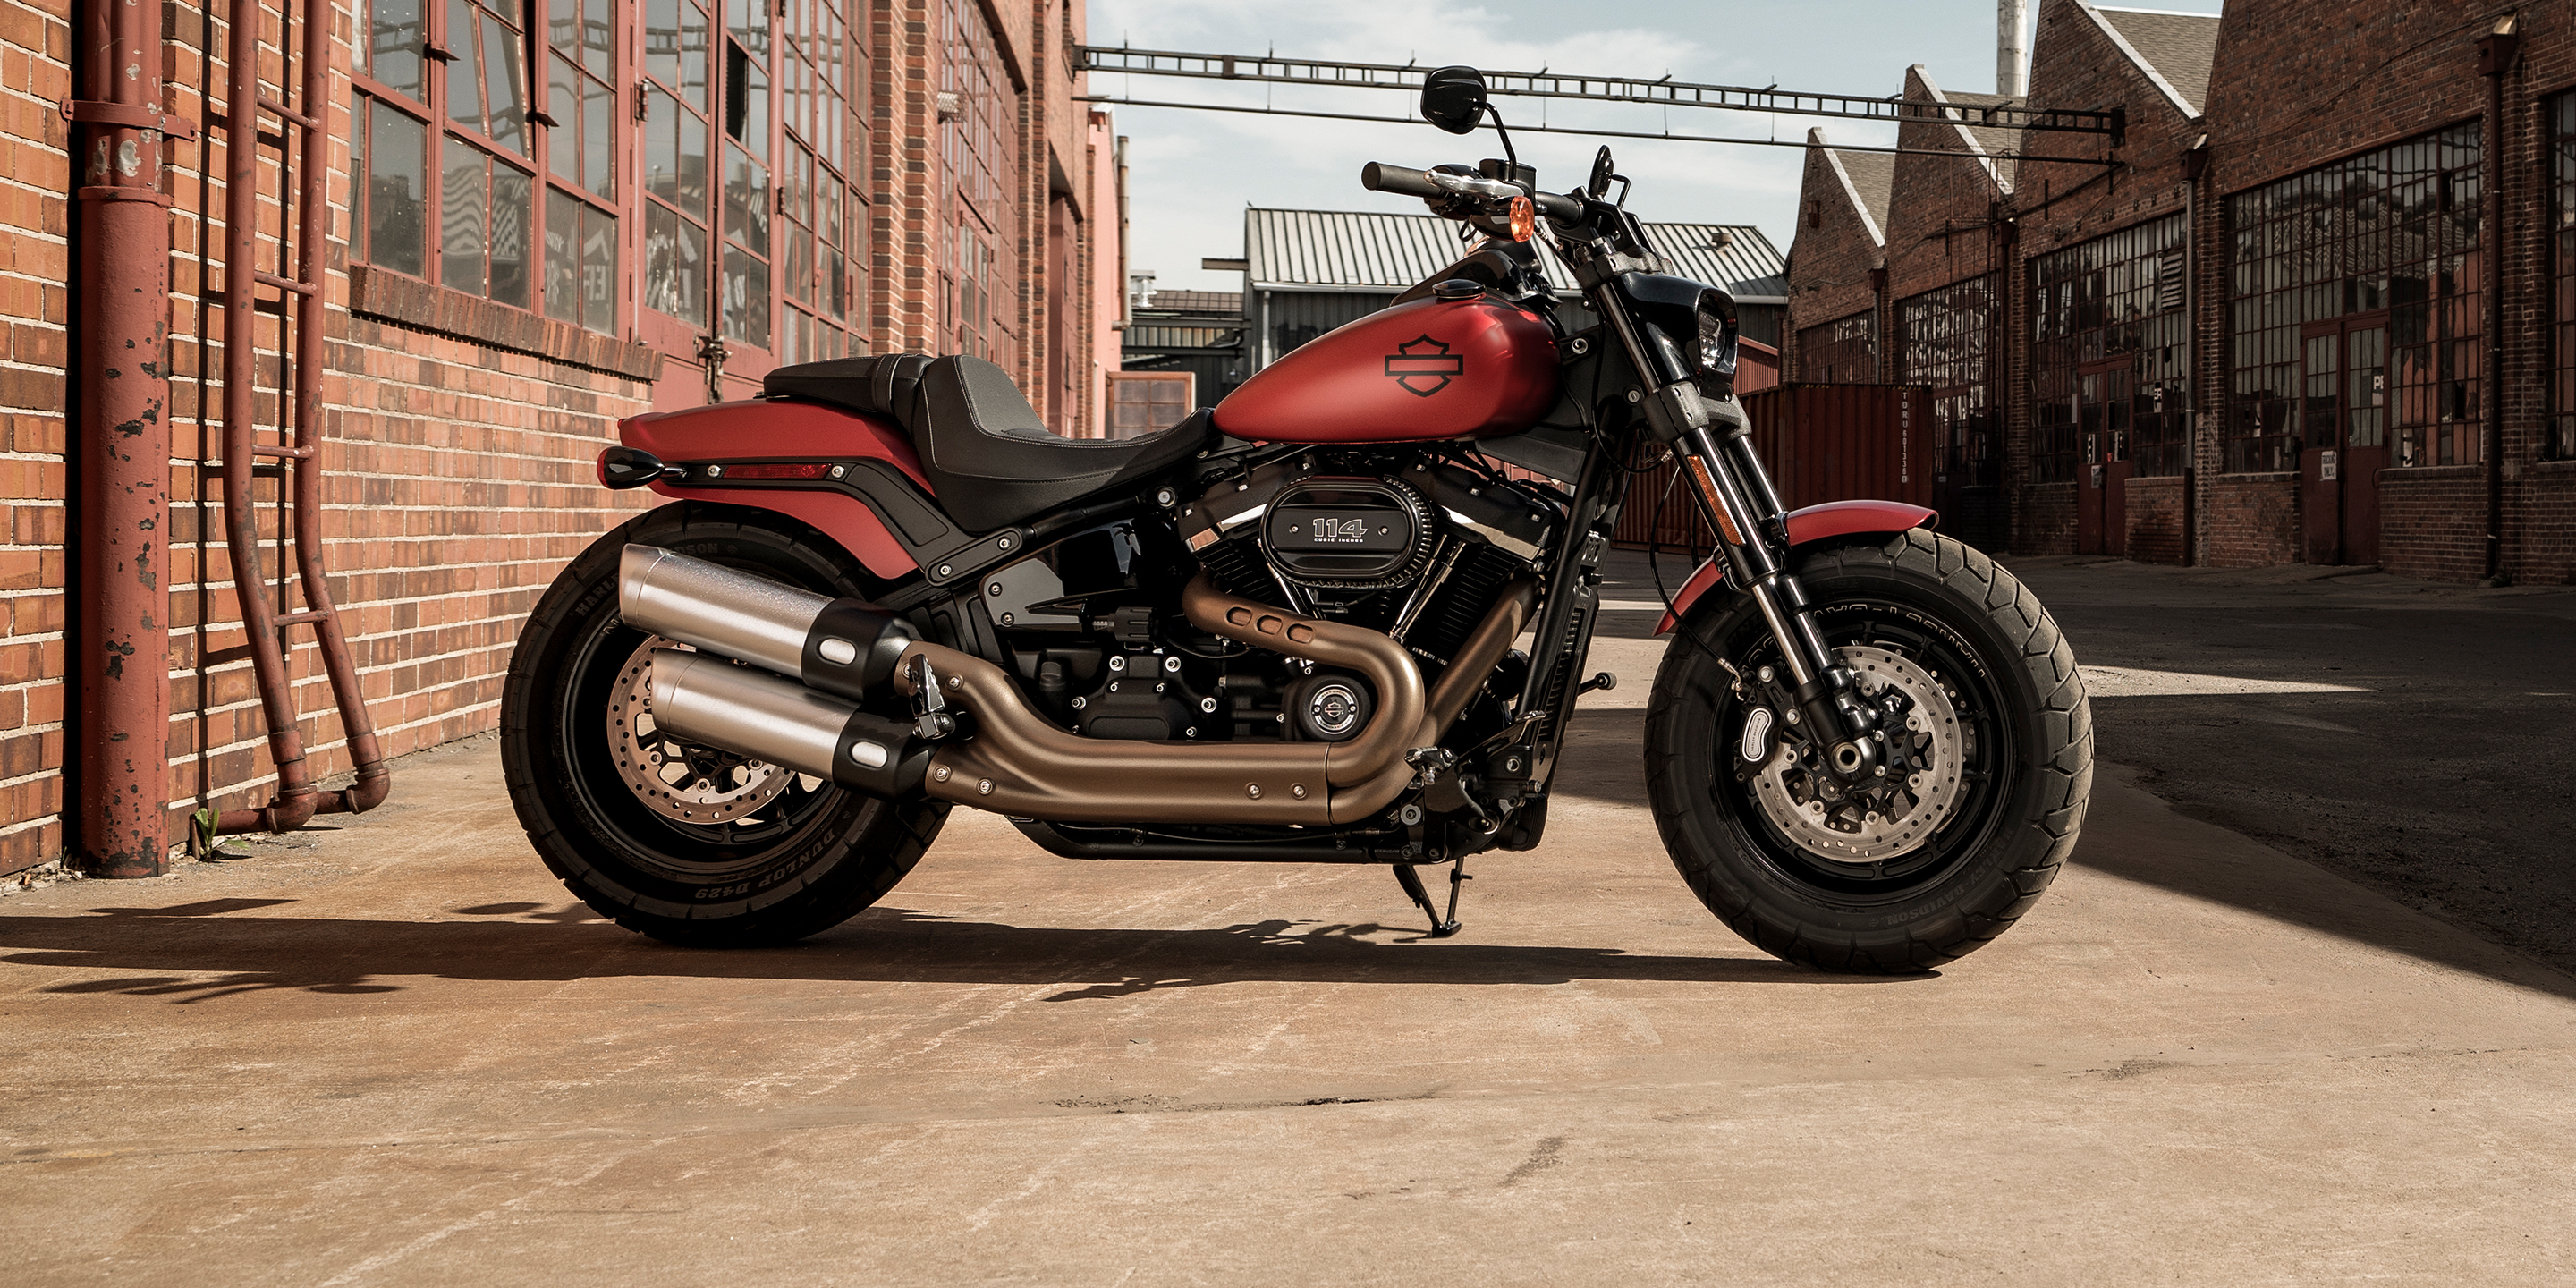 2019 Fat Bob Motorcycle Harley Davidson USA